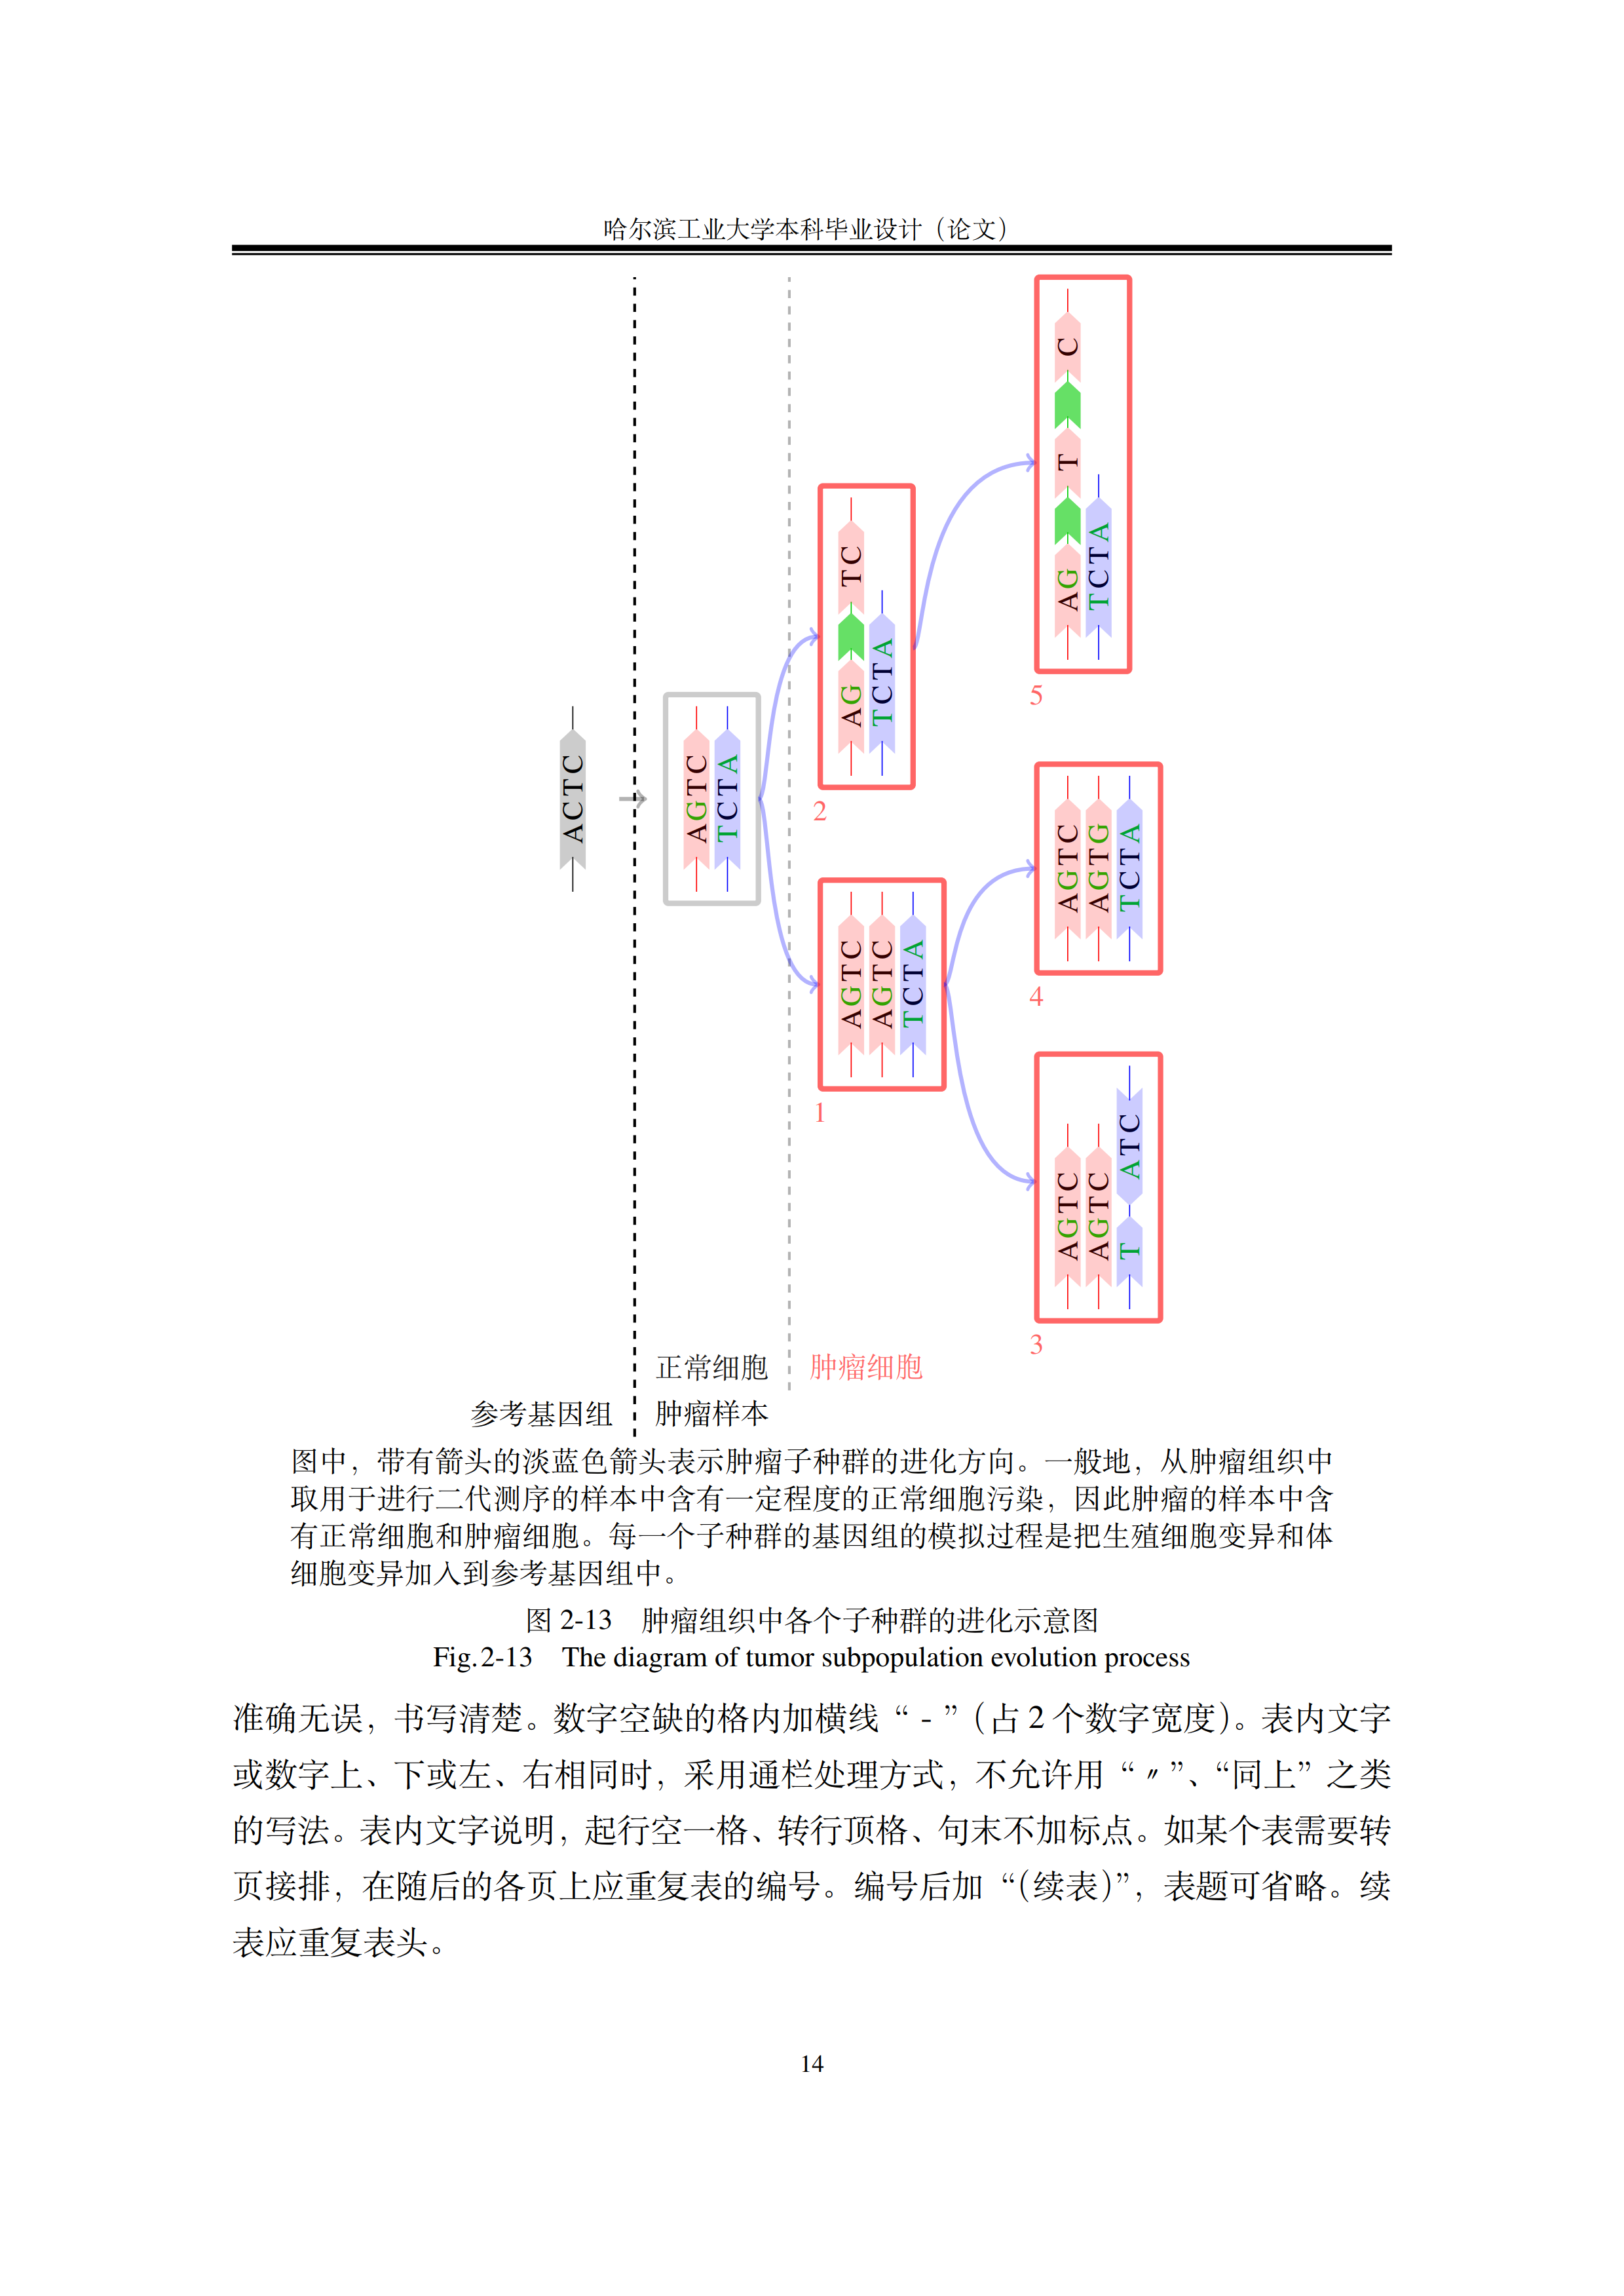 哈尔滨工业大学毕业论文 LaTeX 模板